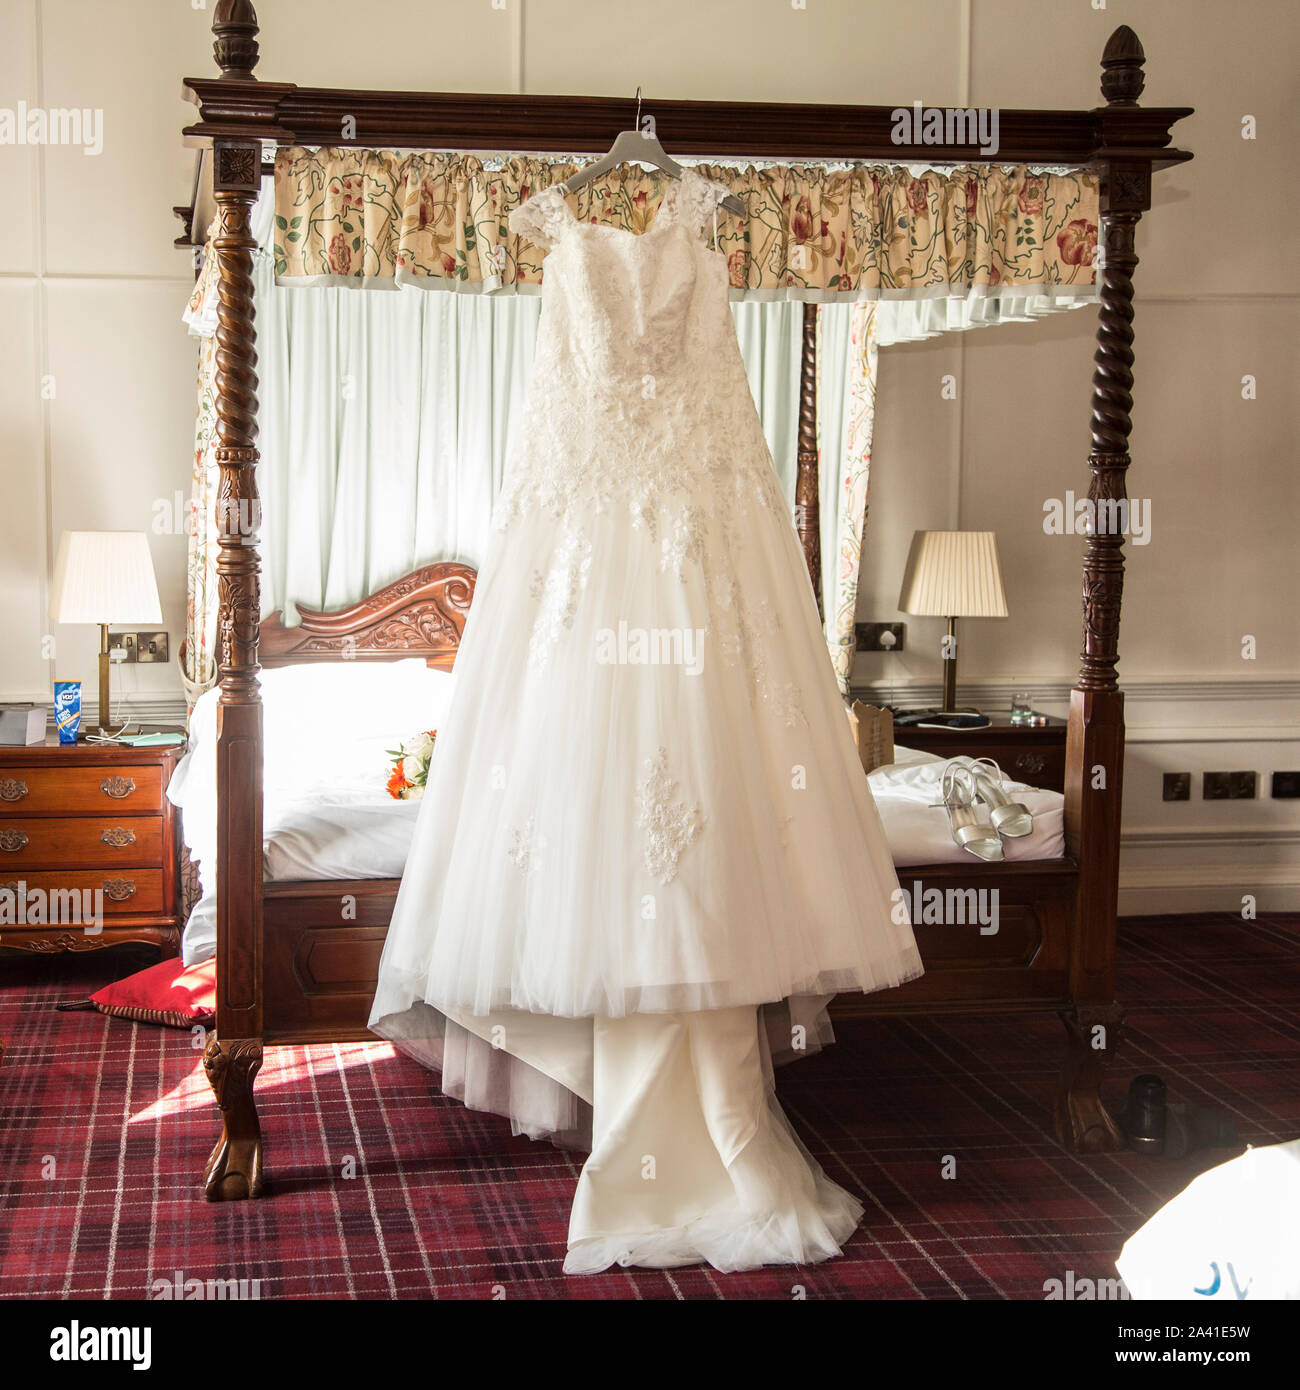 Robe de mariage mariées accroché sur un lit à baldaquin le jour de son  mariage avant d'être usés, longue robe de mariée blanche en attente d'être  mise sur pied par l'épouse Photo